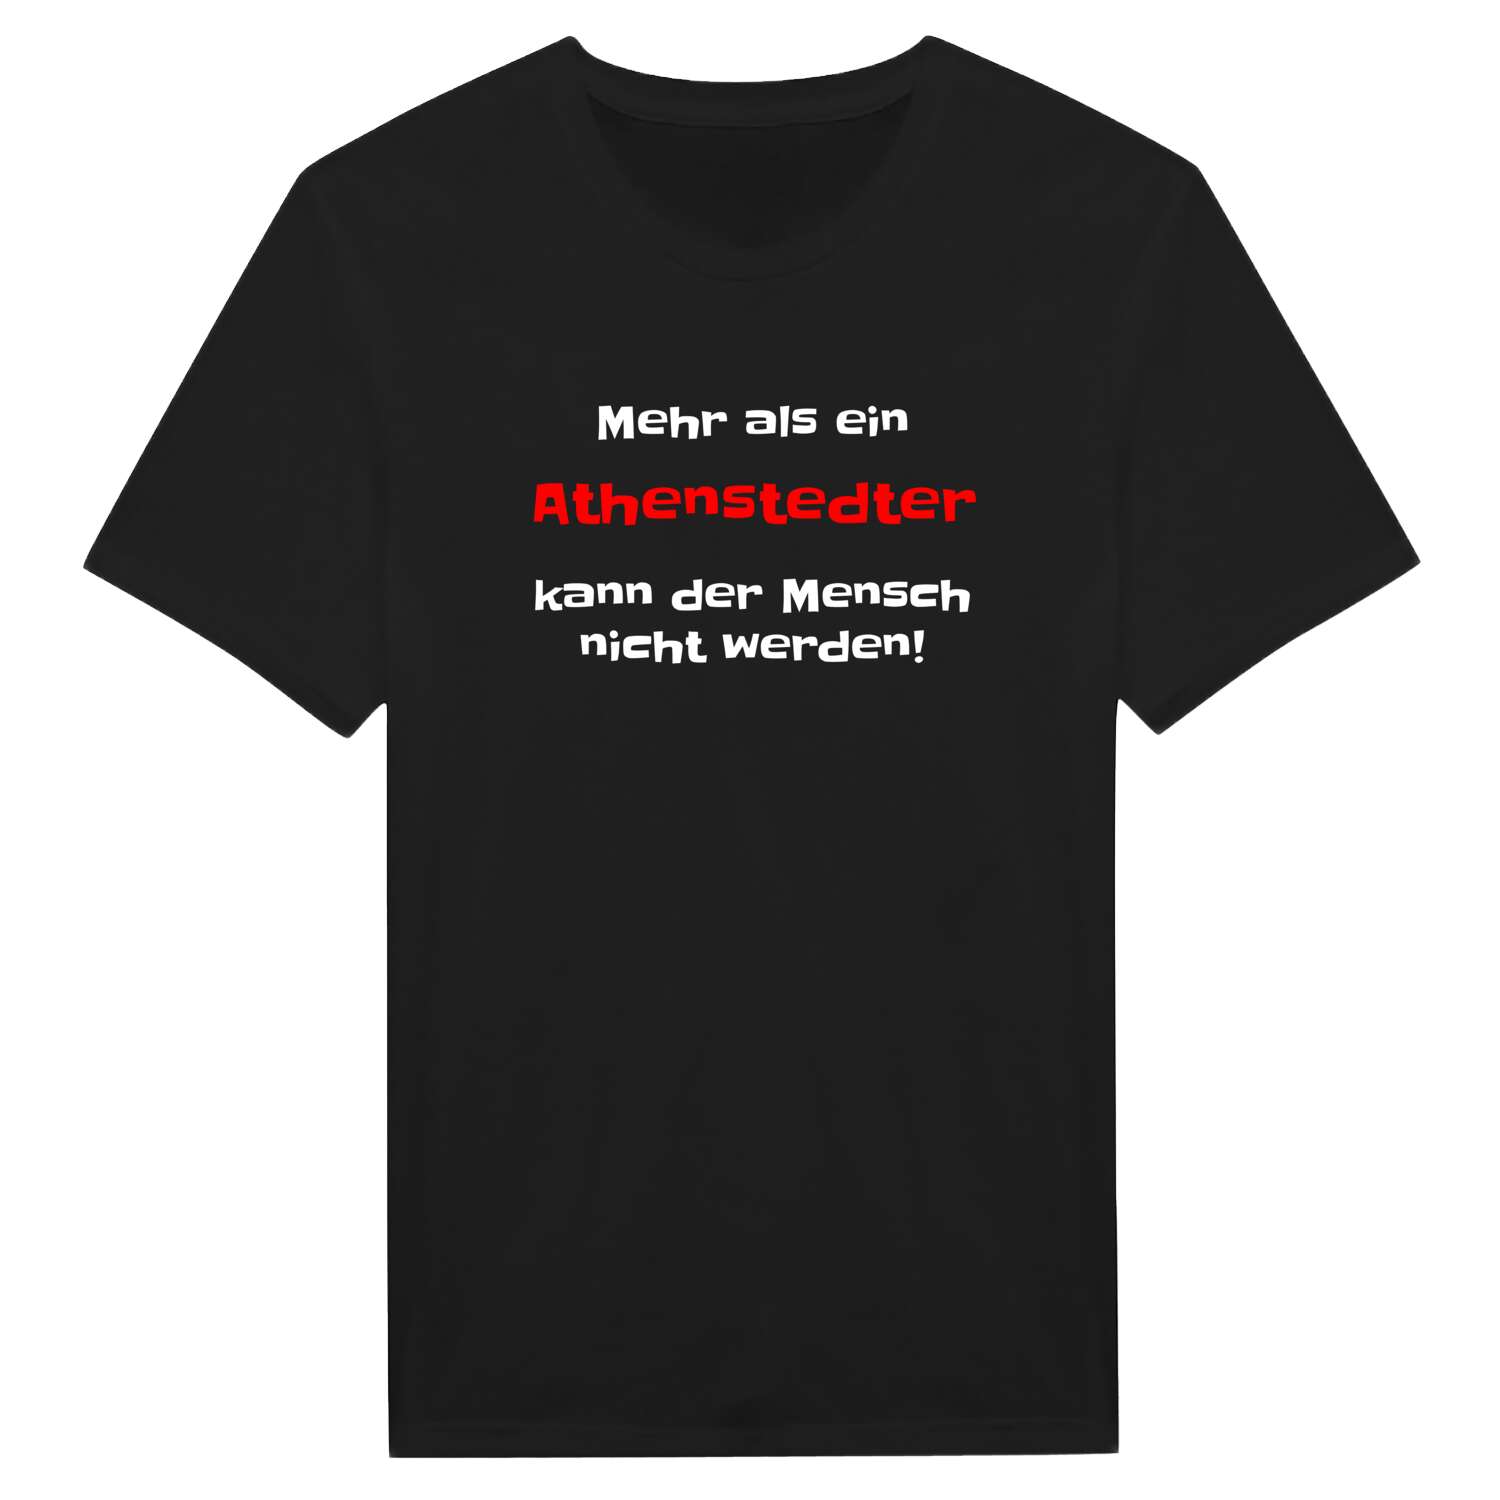 Athenstedt T-Shirt »Mehr als ein«